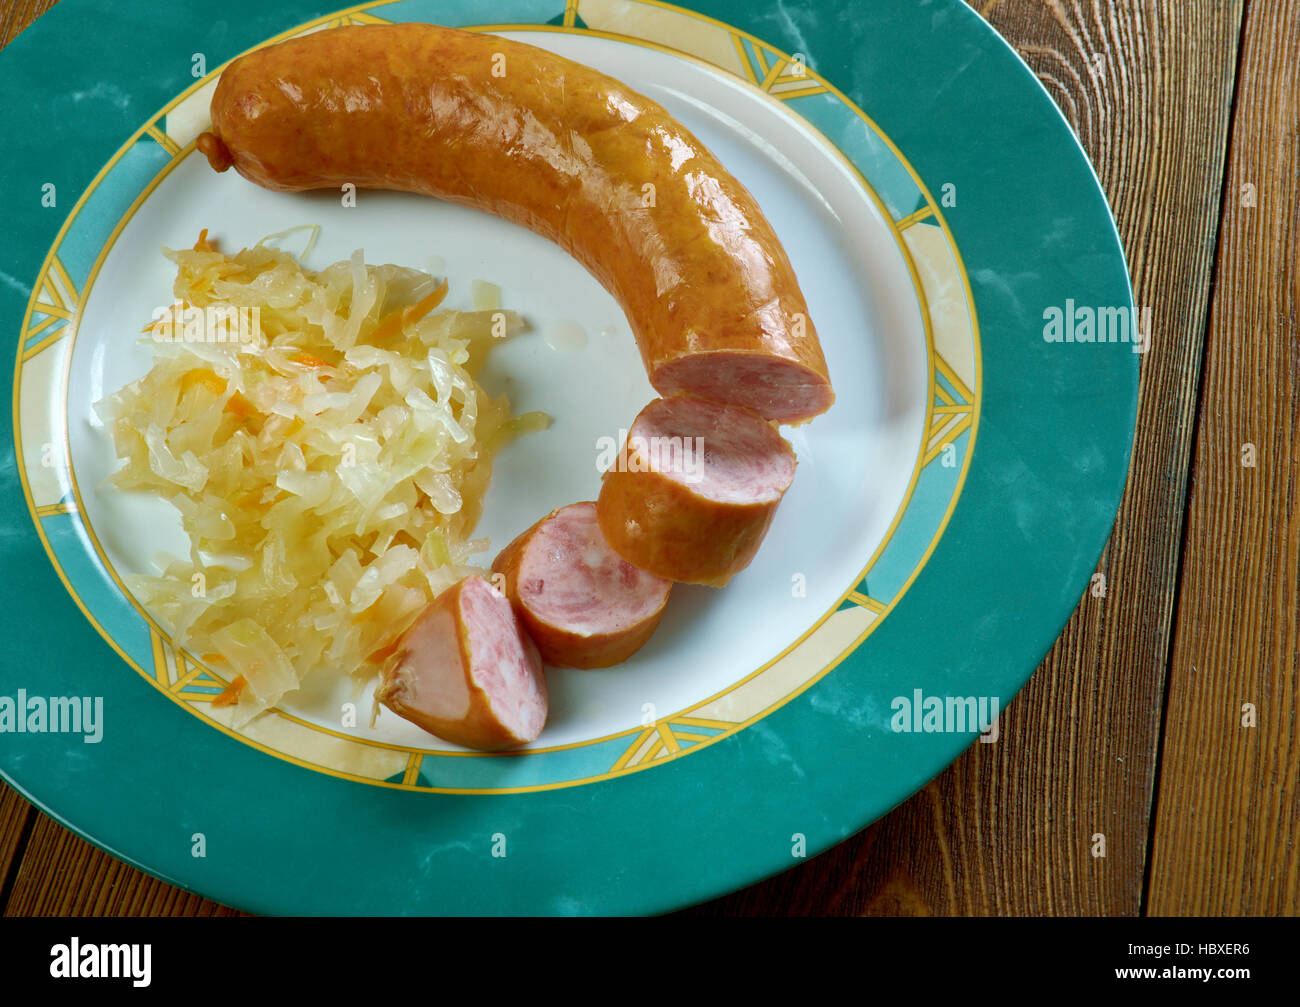 Krainer Wurst mit Sauerkraut - slowenische Wurst, was am ähnlichsten Kielbasa oder polnische Wurst in Nordamerika nennt man Stockfoto